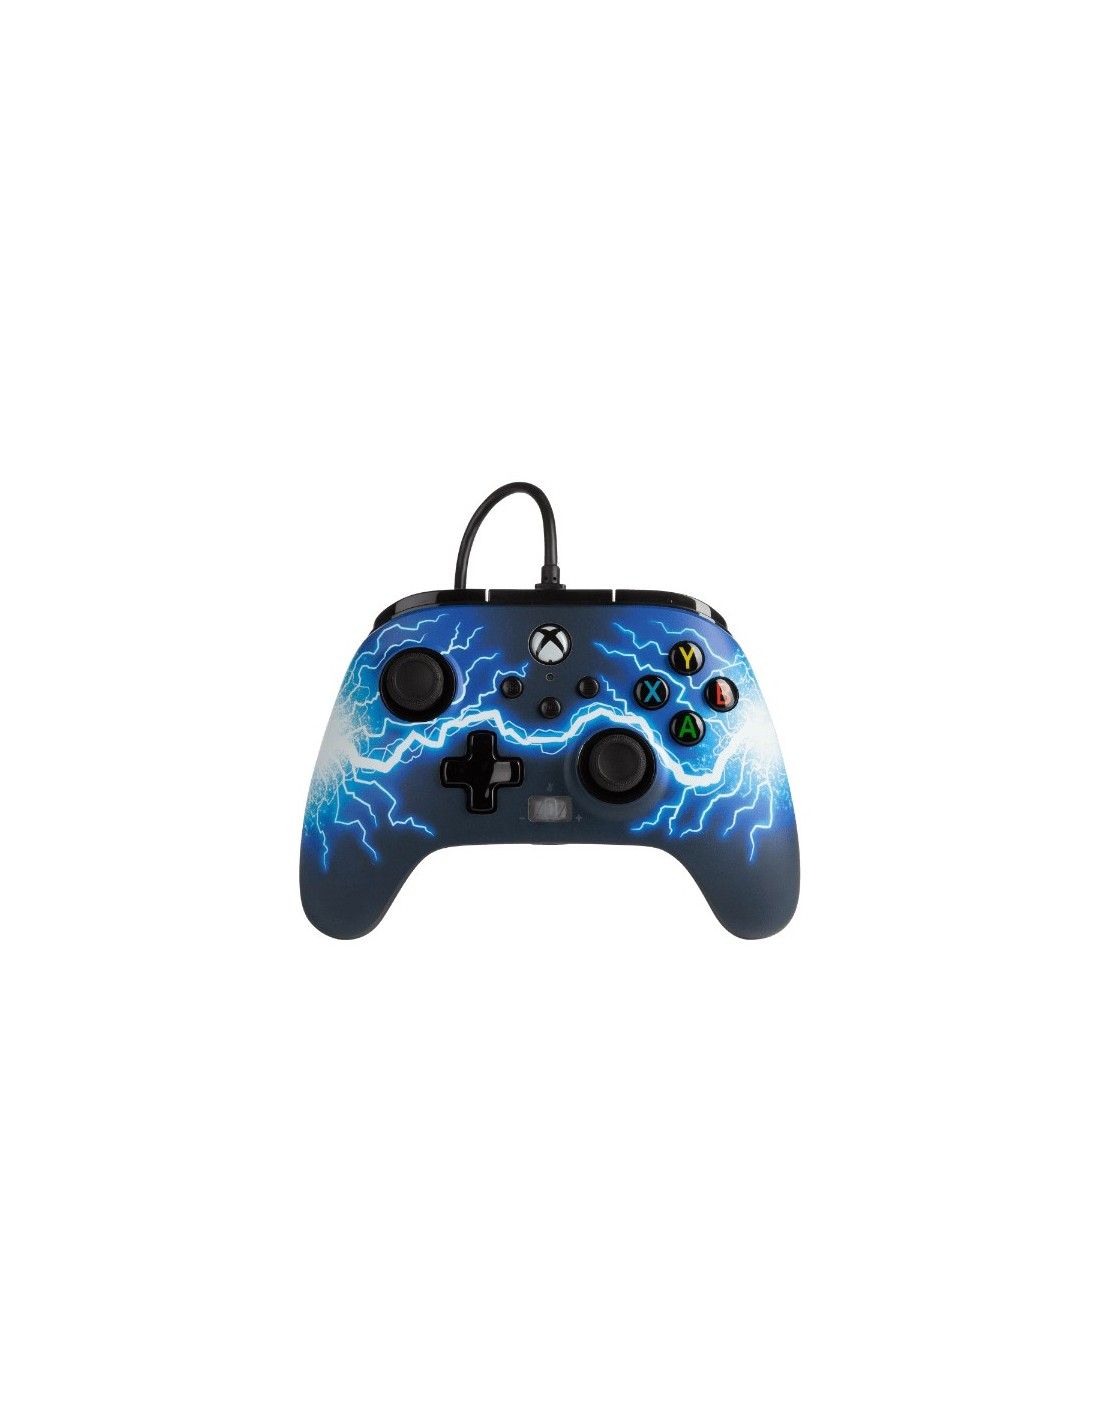 Mando Gaming con Cable Power A para Xbox - Negro/Azul